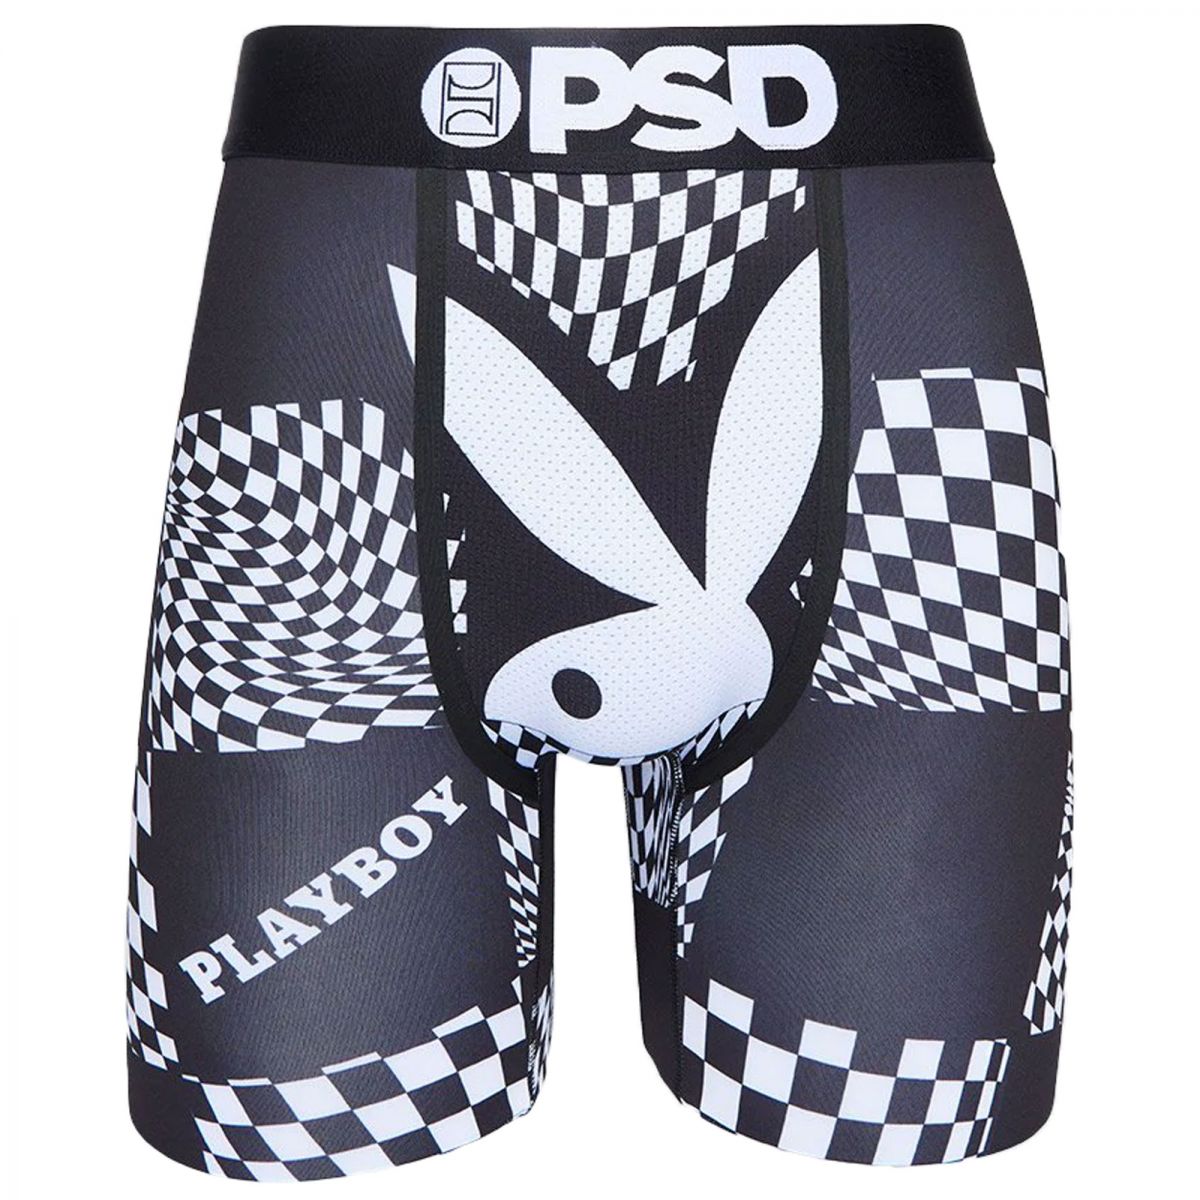 PSD UNDERWEAR Playboy Warp Check Boxer Briefs 122180045 - Karmaloop